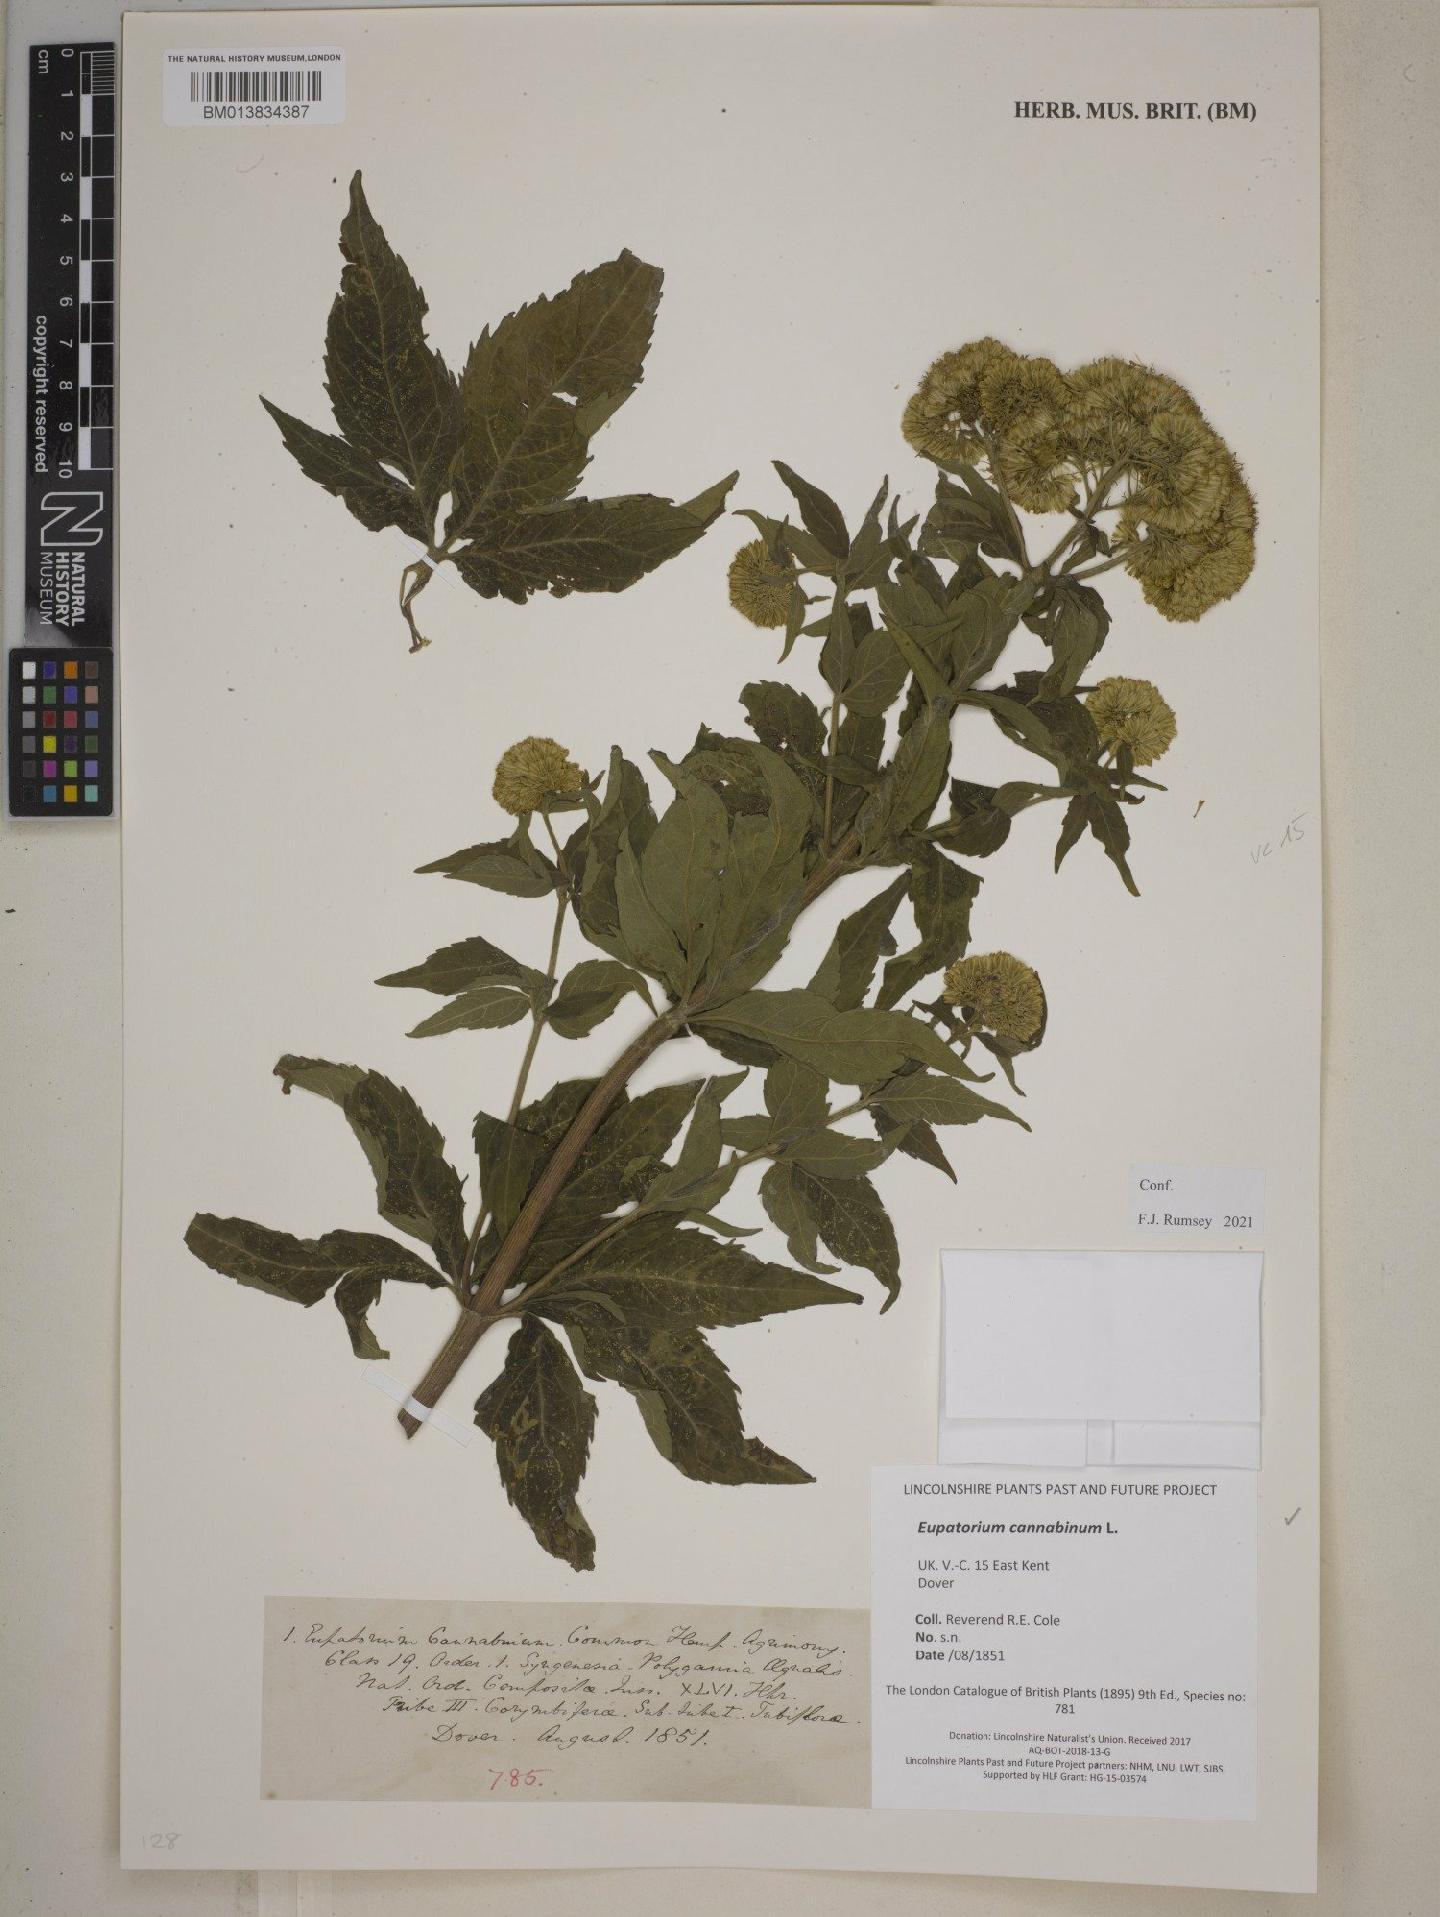 To NHMUK collection (Eupatorium cannabinum L.; NHMUK:ecatalogue:9254669)